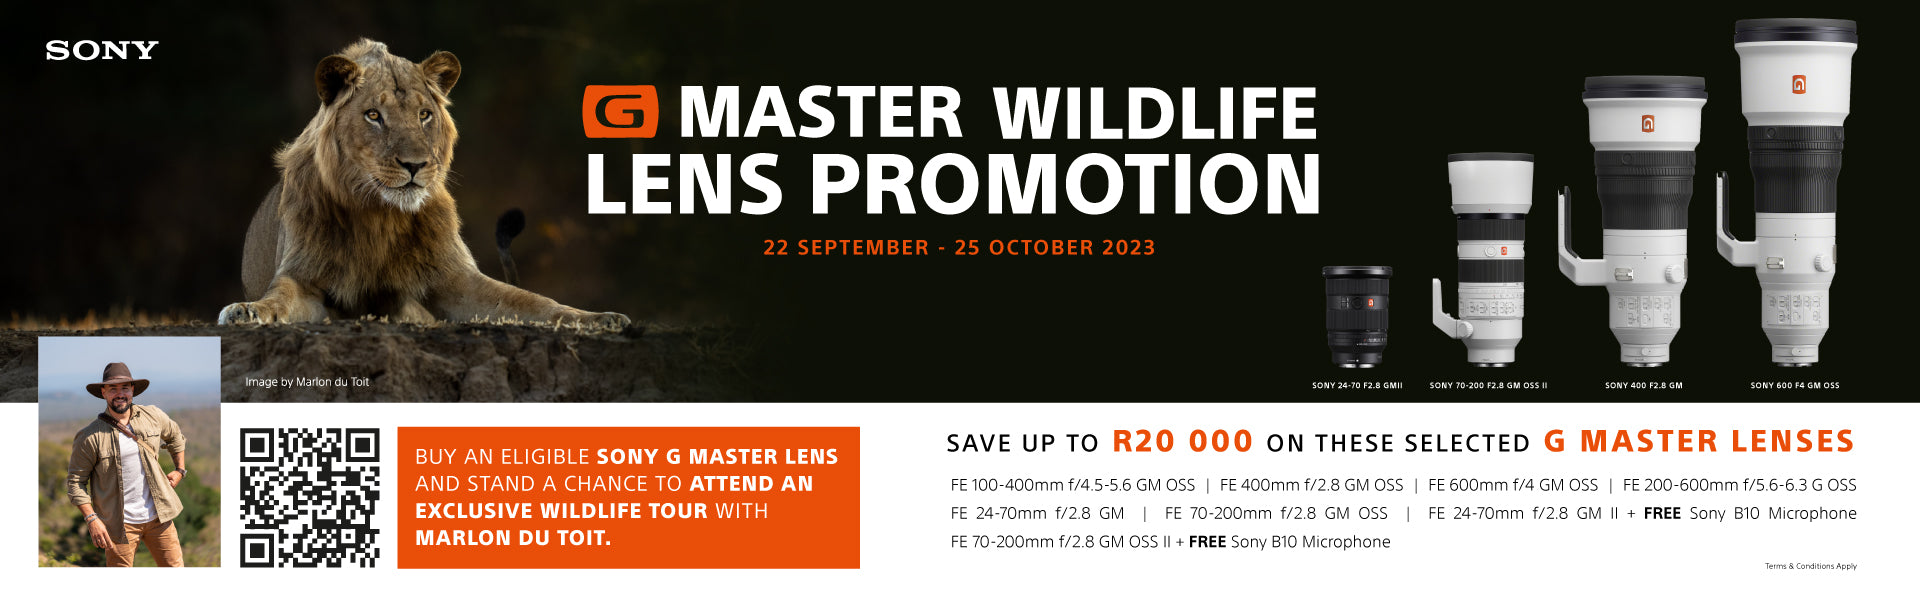 Sony G Master Wildlife Lens Promotion